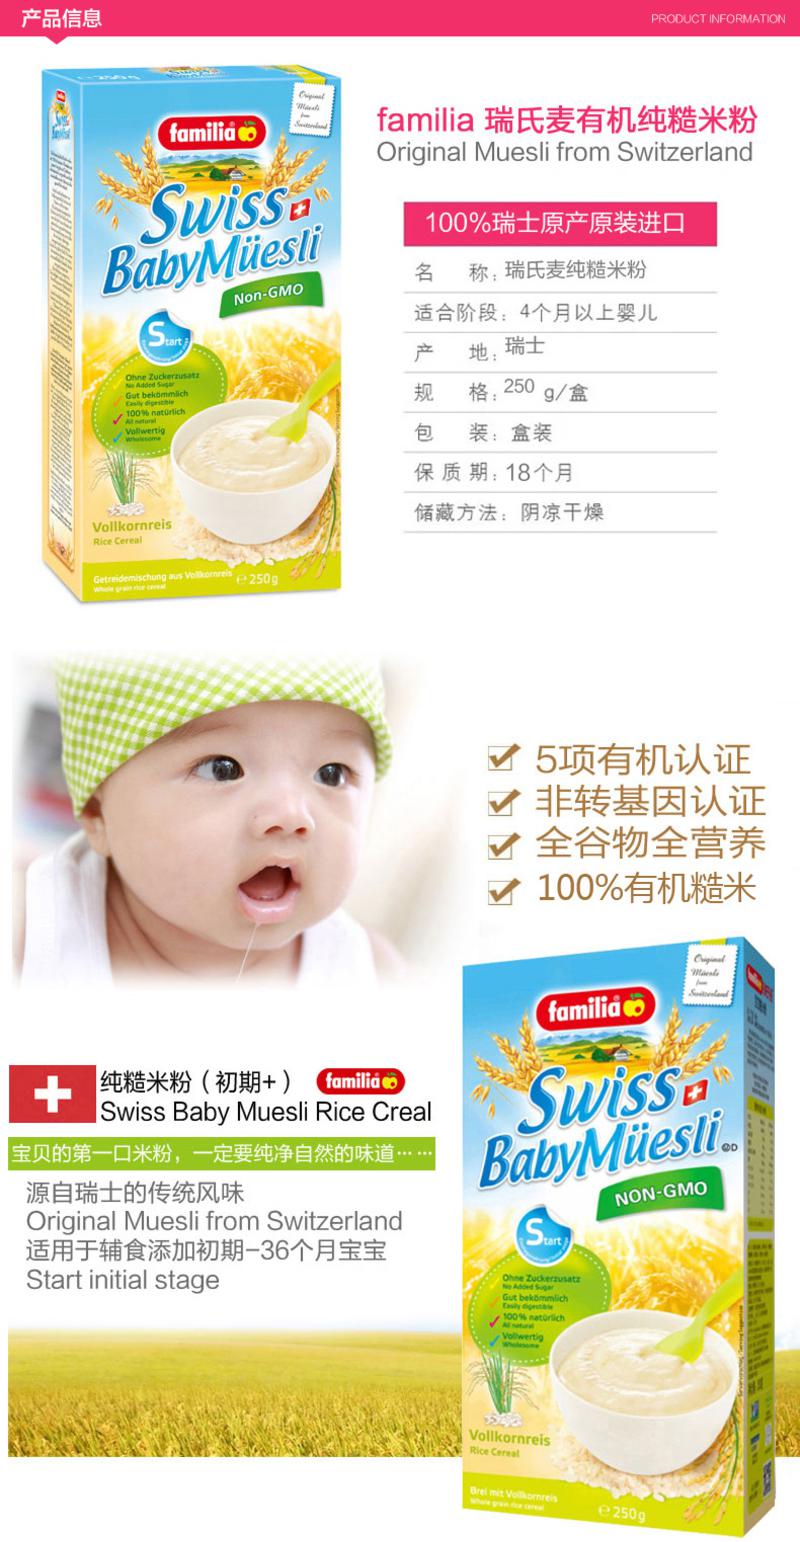 瑞士原装进口  瑞氏麦/familia 婴儿纯糙米粉 4个月起 单盒装